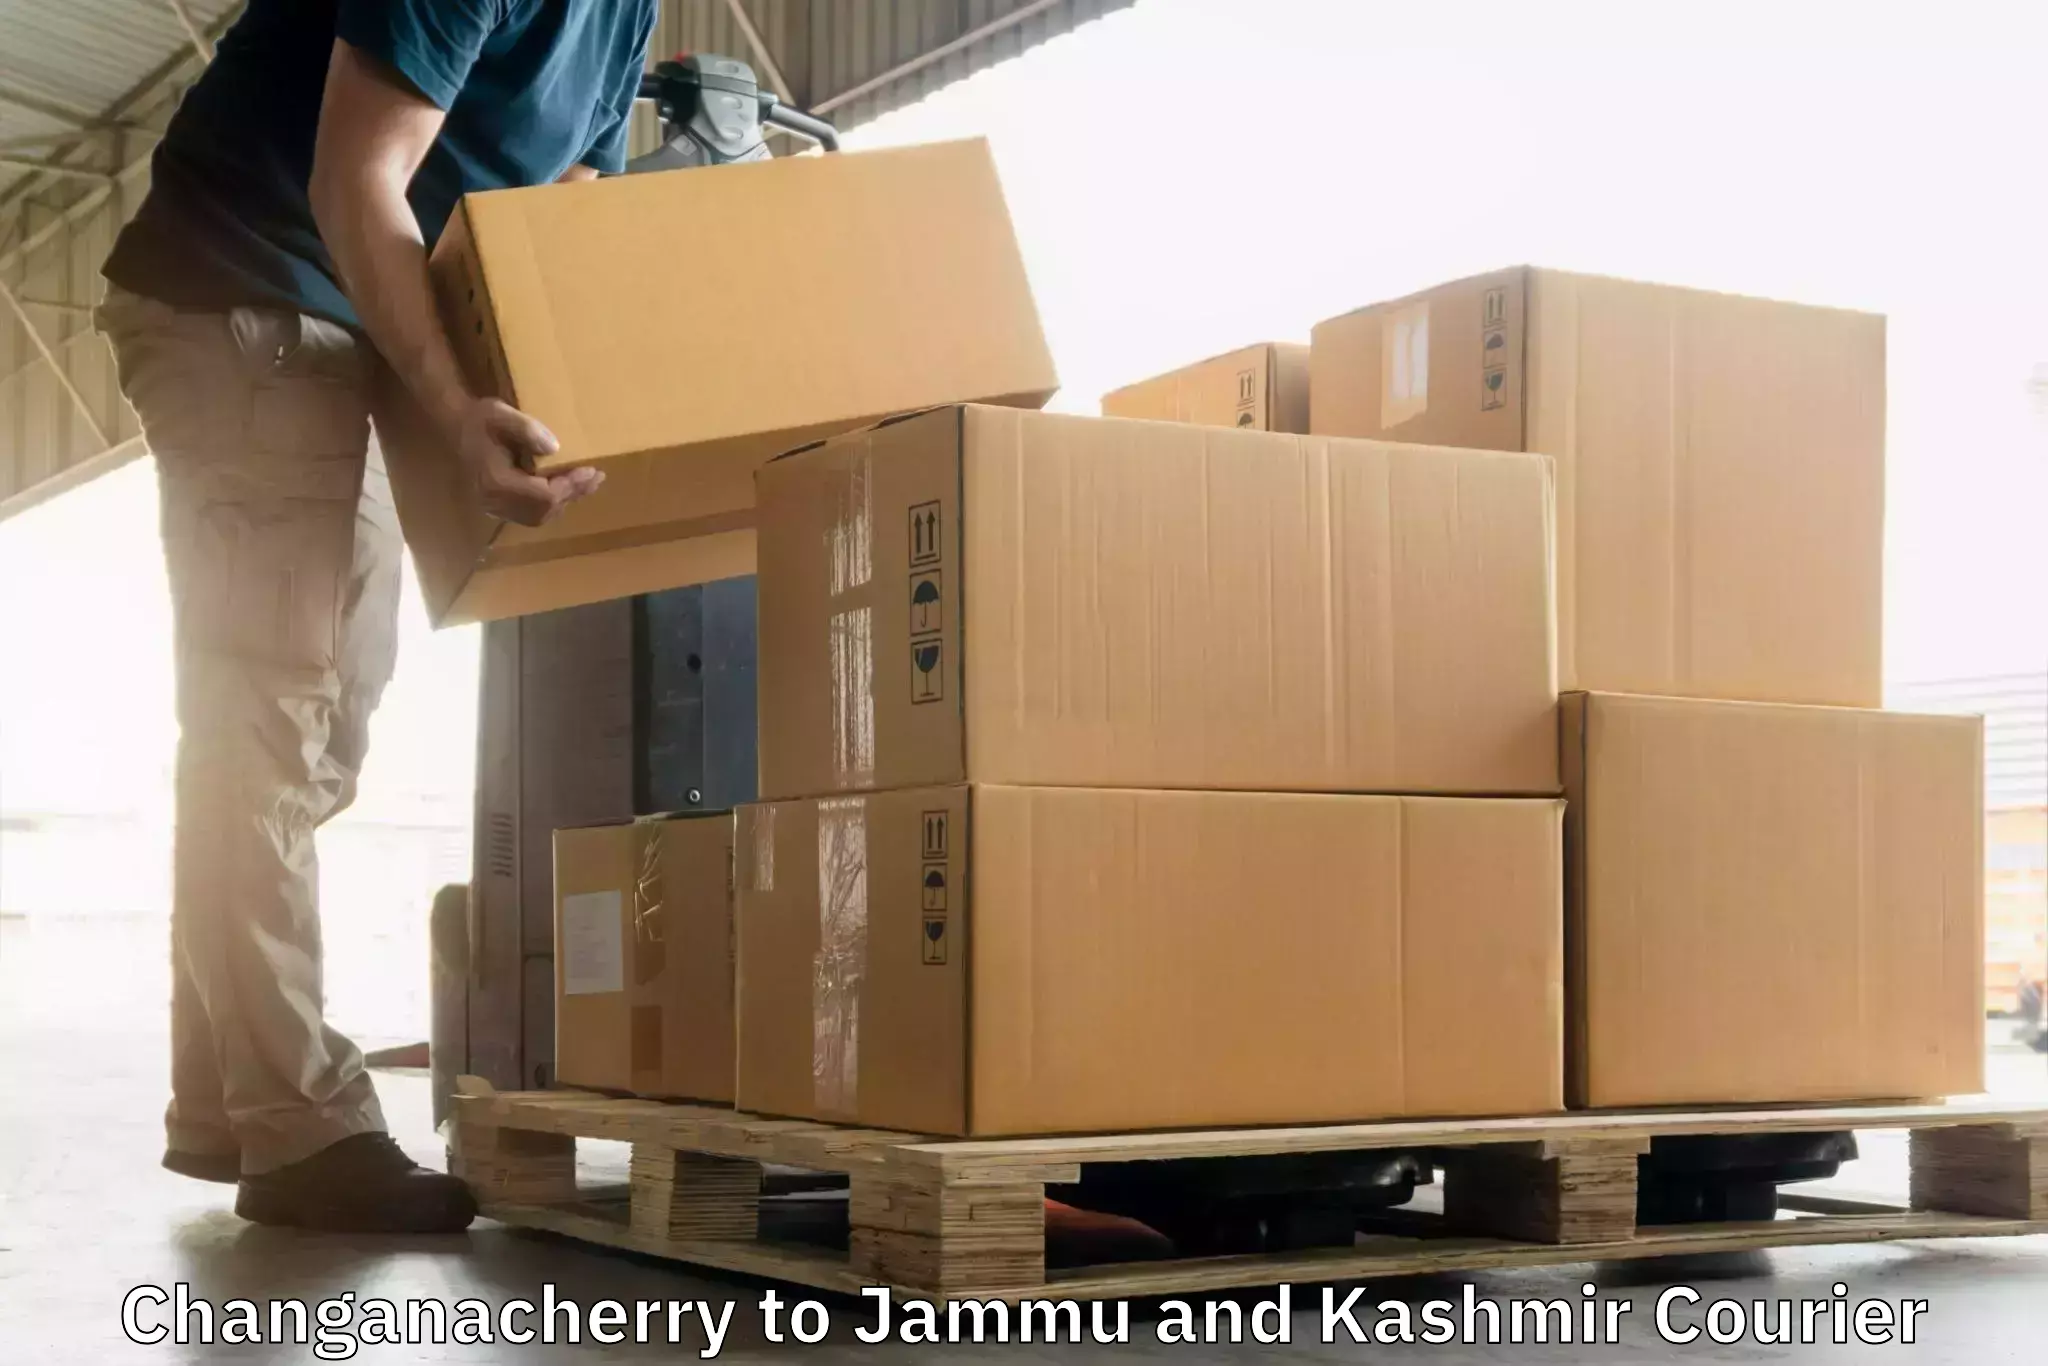 Express courier capabilities Changanacherry to University of Jammu